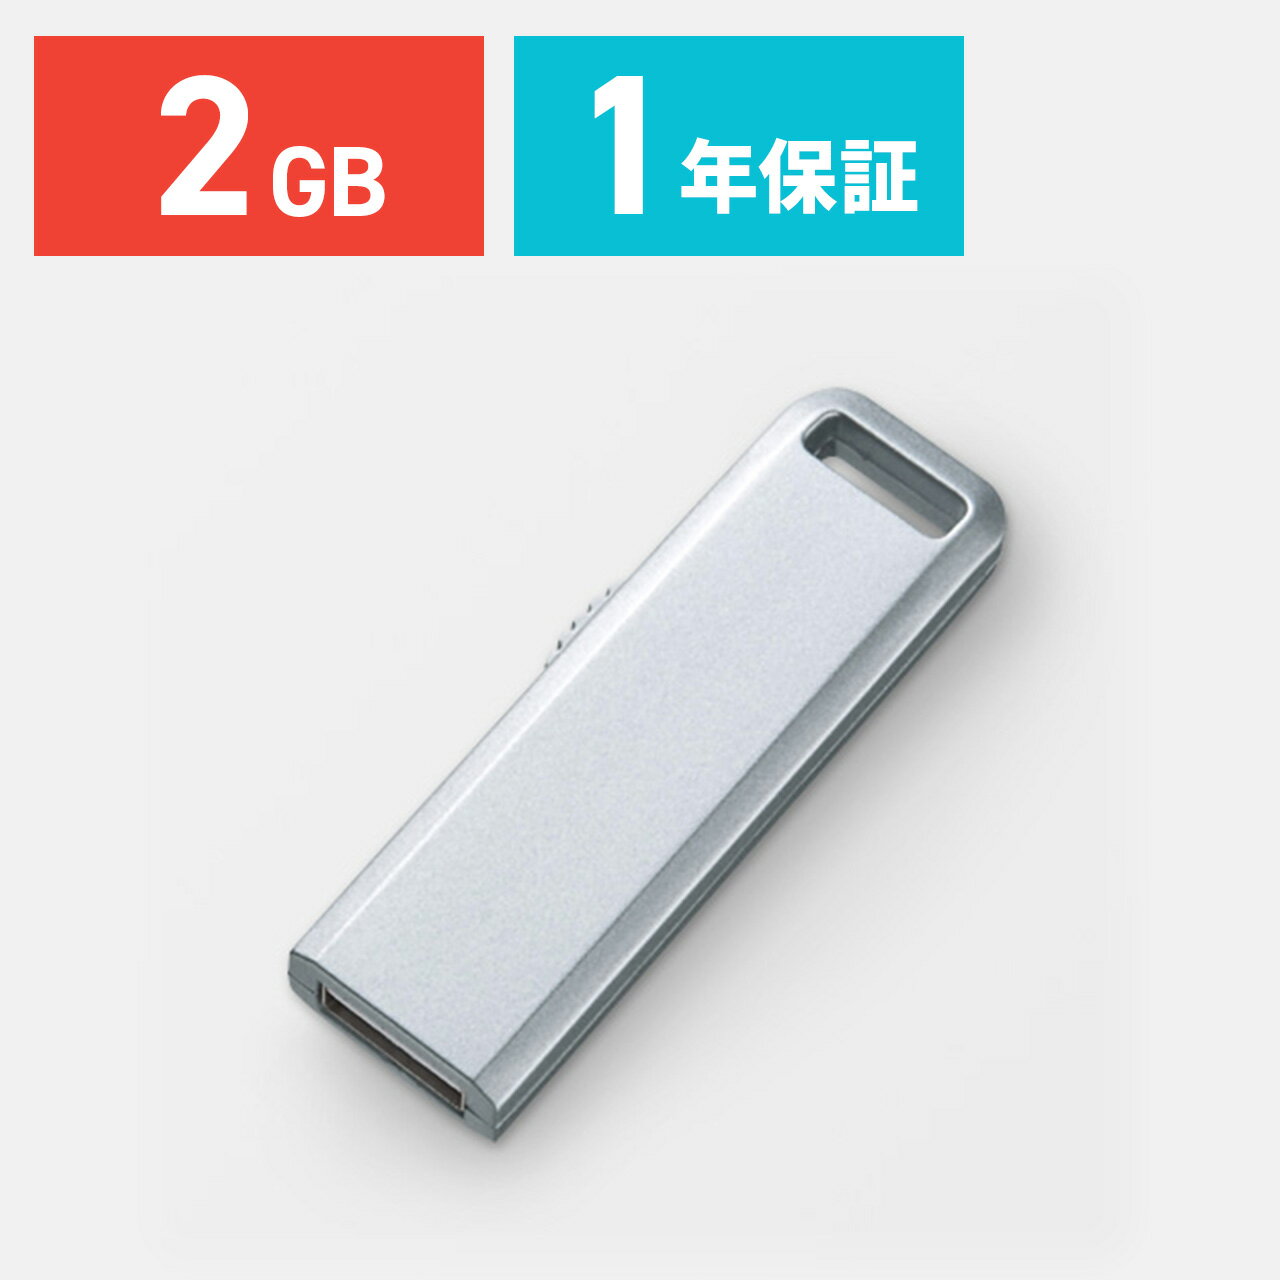 USBメモリ 2GB シルバー スライドタイプのUSBフラッシュメモリーUSBメモリー 【サンワダイレクト限定品】【全品ポイント10倍〜8/17(金)AM9:59まで】【サンワサプライ直営店】